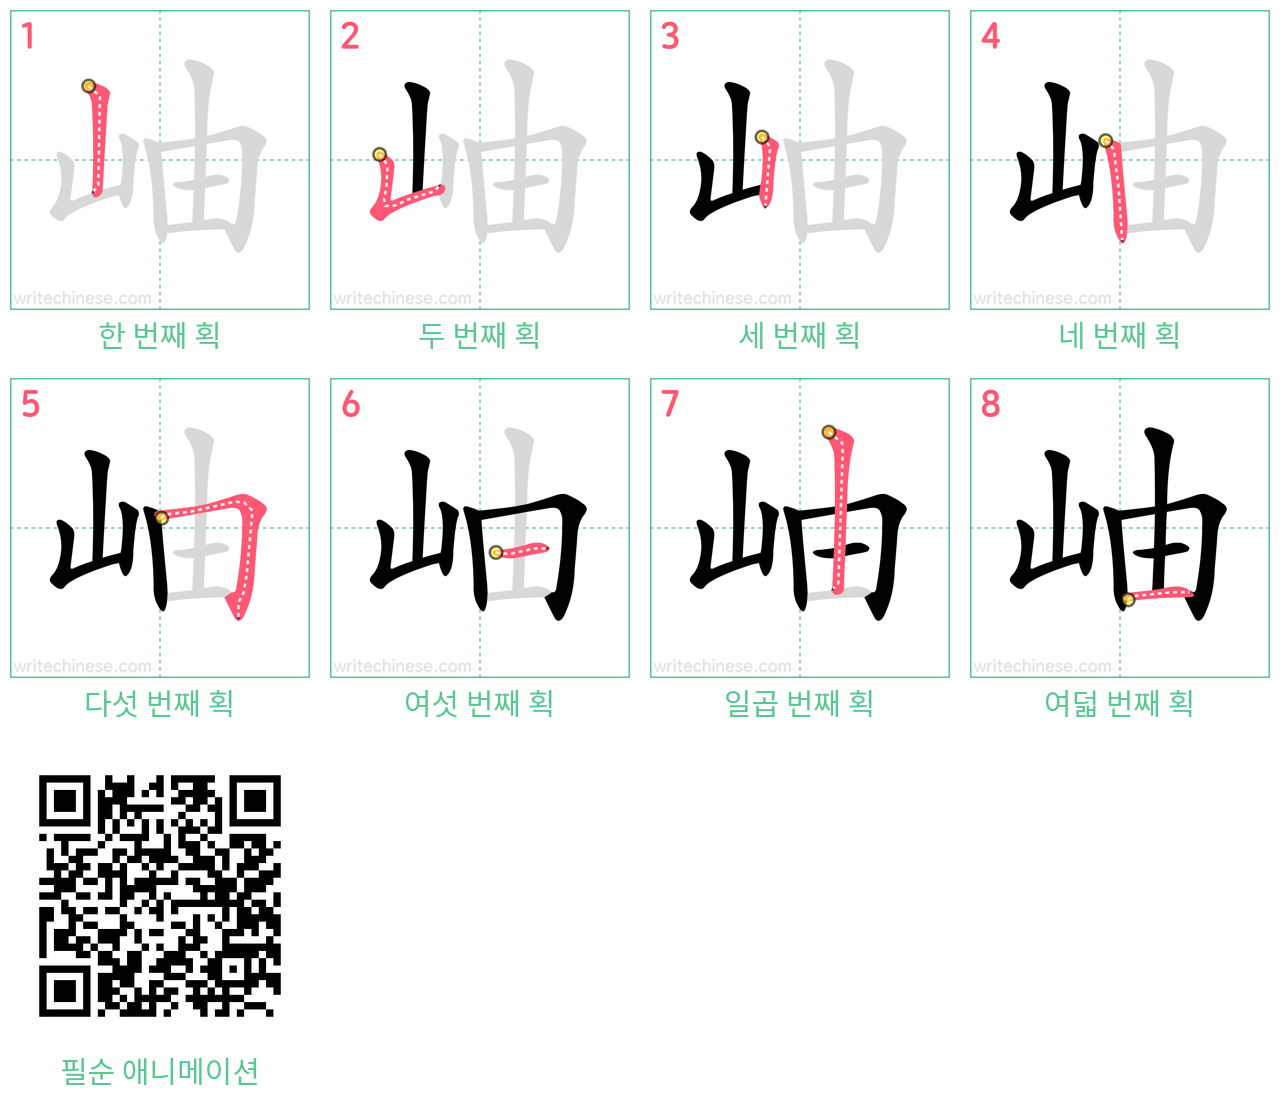 岫 step-by-step stroke order diagrams